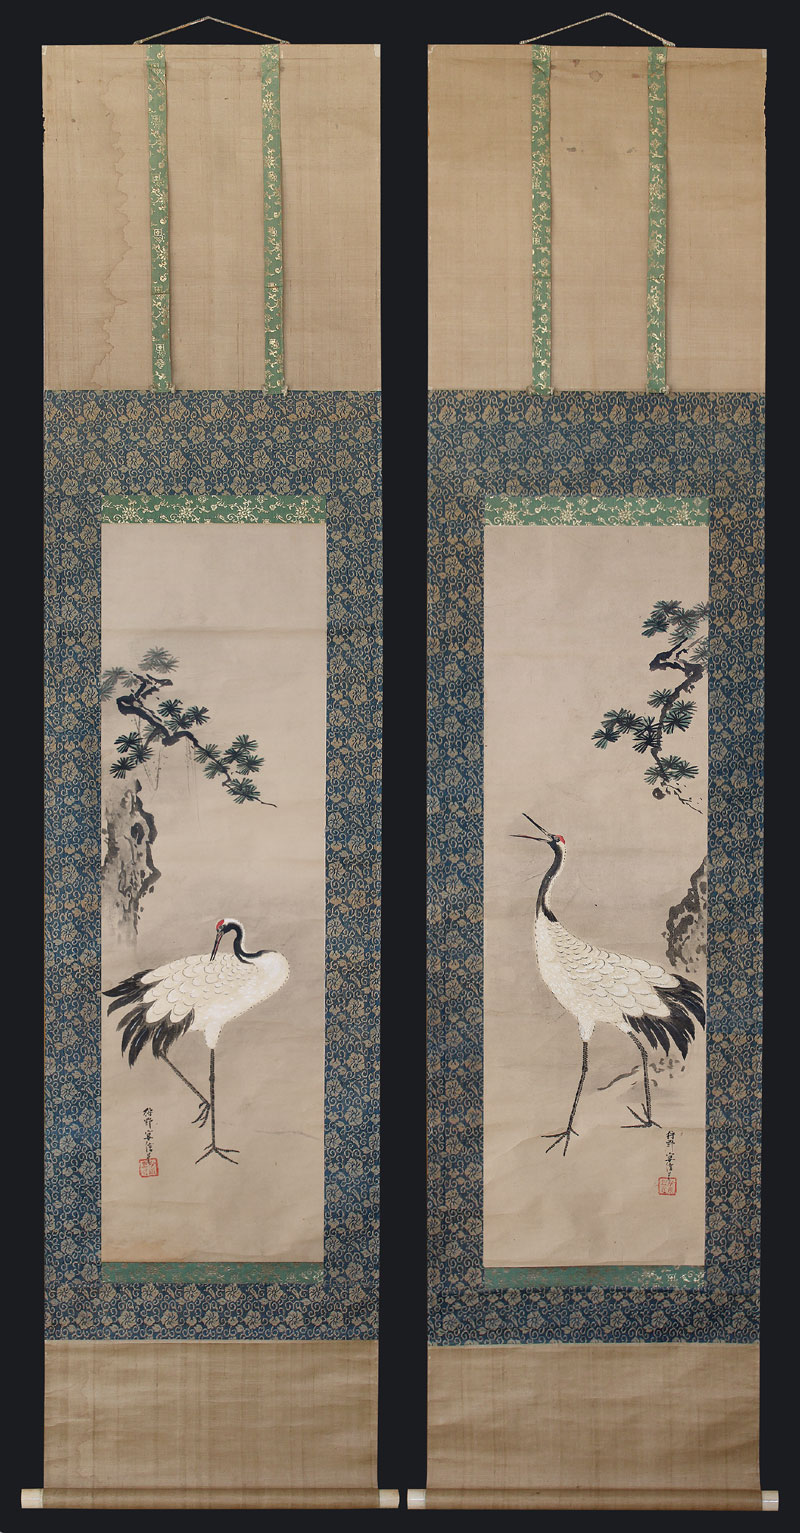 Bildrolle-Japan-Edo-Epoche-gesamt